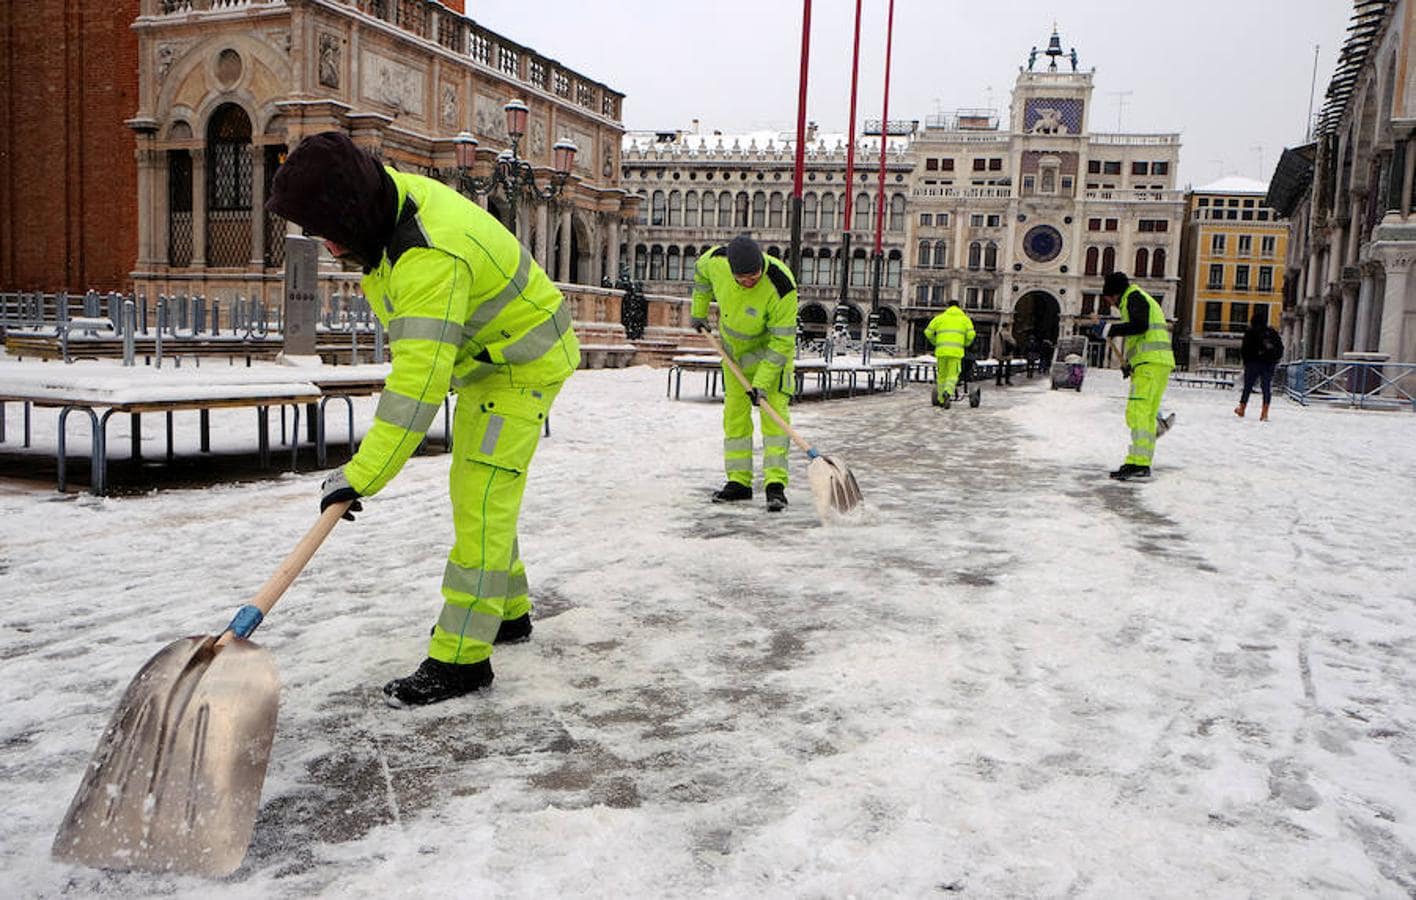 Trabajadores quitan nieve de la turística Plaza de San Marcos de Venecia.. 